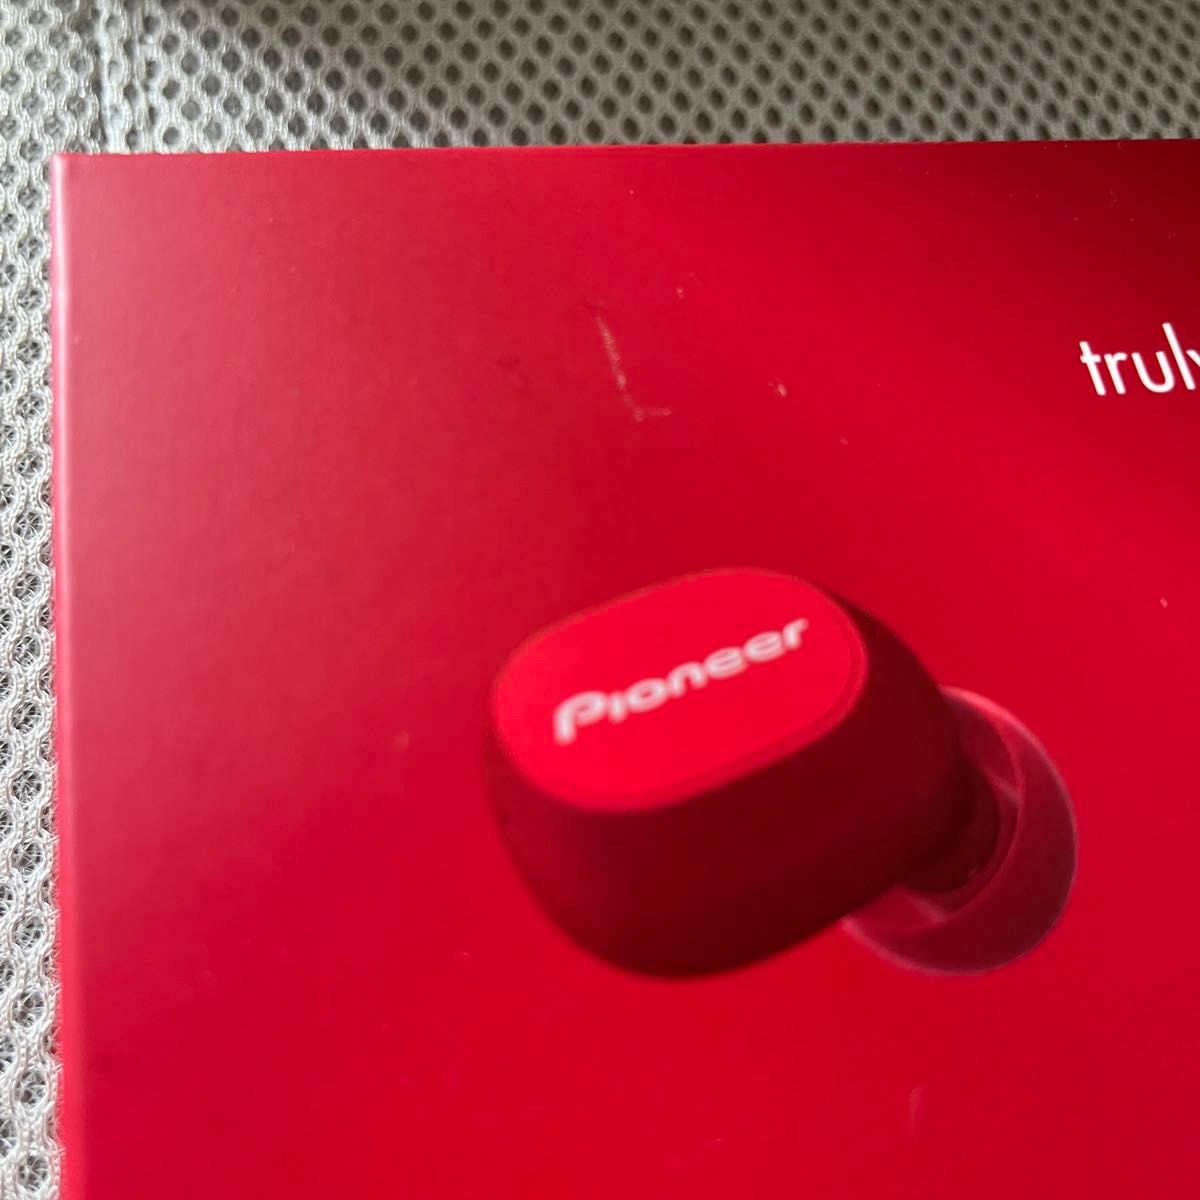 【新品】Pioneer パイオニア 完全ワイヤレスイヤホン Bluetooth対応 マイク付 赤 レッド SE-C5TW(R) 